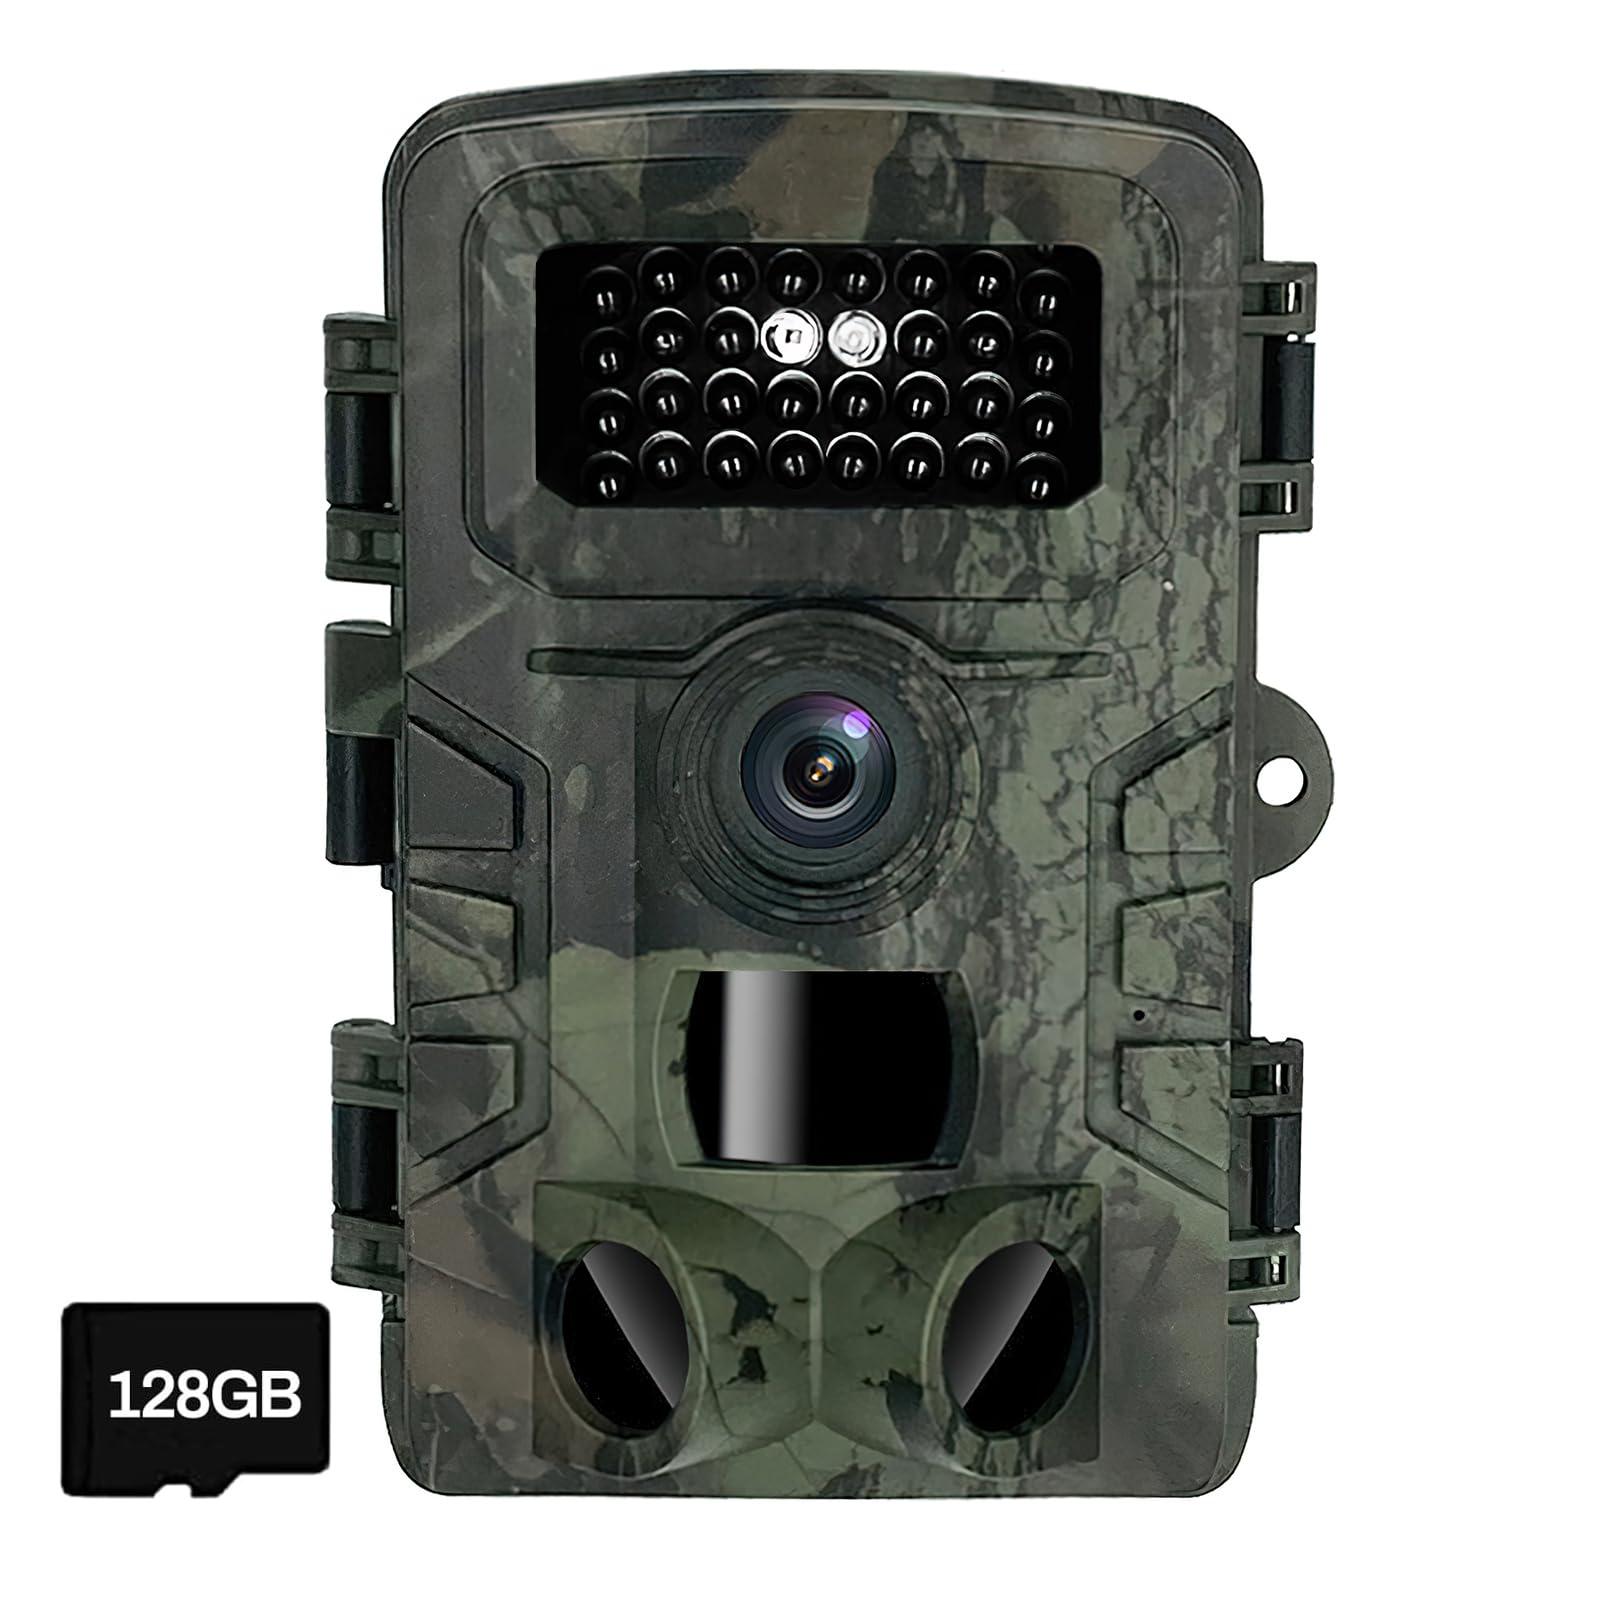 GOXAEEE Wildkamera mit Bewegungsmelder Nachtsicht, 36MP 1080P HD Wildtierkamera,0.3s Jagdkamera,940NM unsichtbares Infrarot nachtsichtkamera für Wildbeobachtung,IP66 Wasserdicht (Mit 128G-Karte)